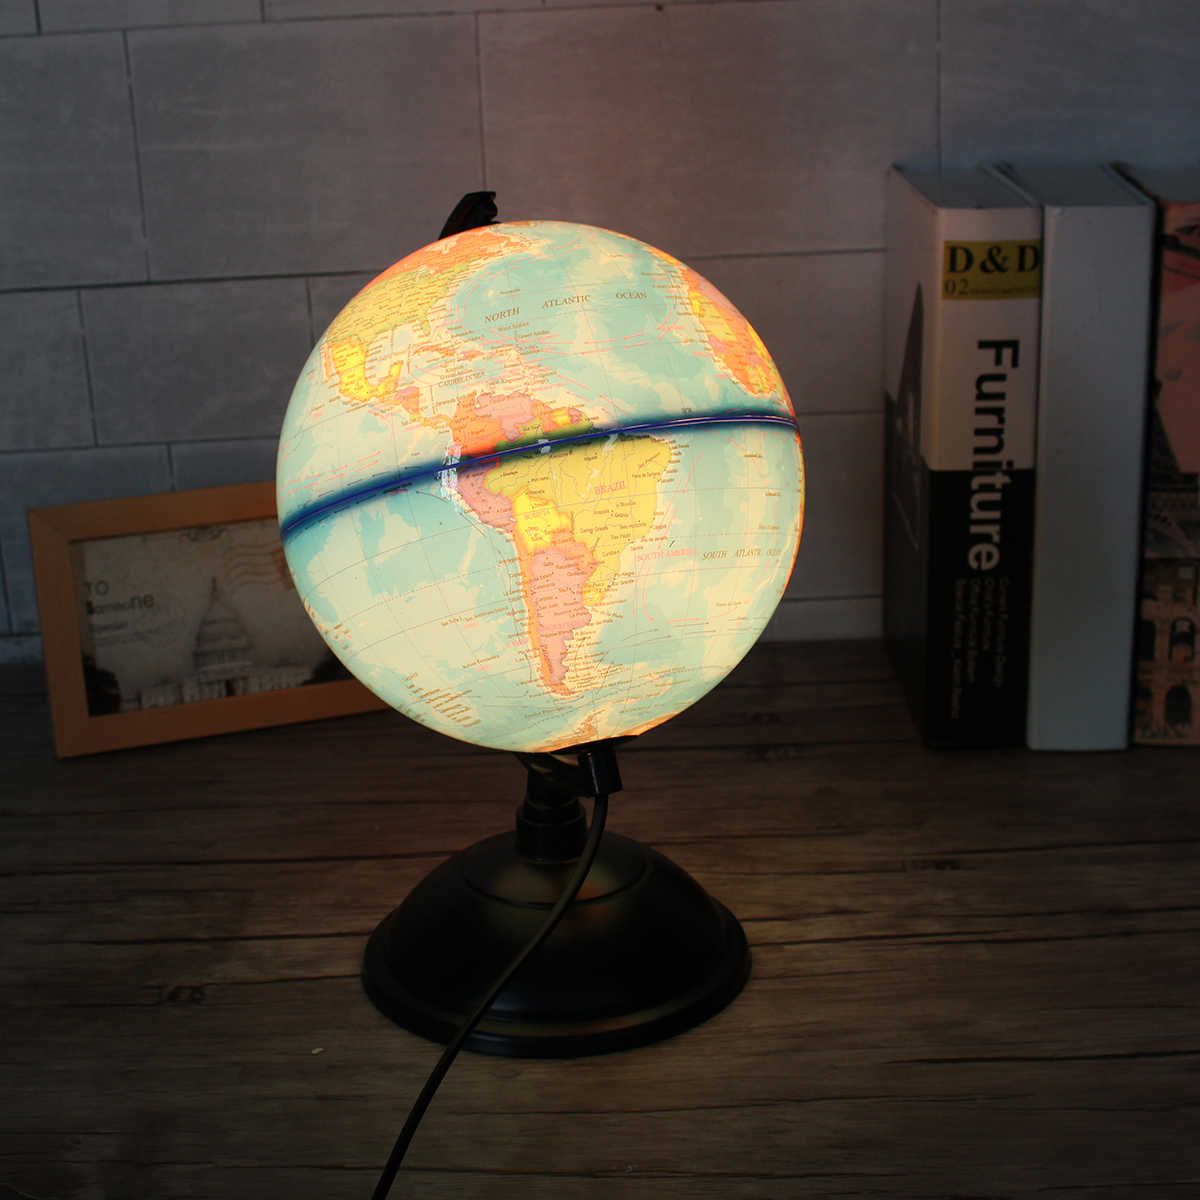 

8 Inch 110V LED World Map Globe Night Light Home Office Room Desktop Decor Lamp Kids Gift